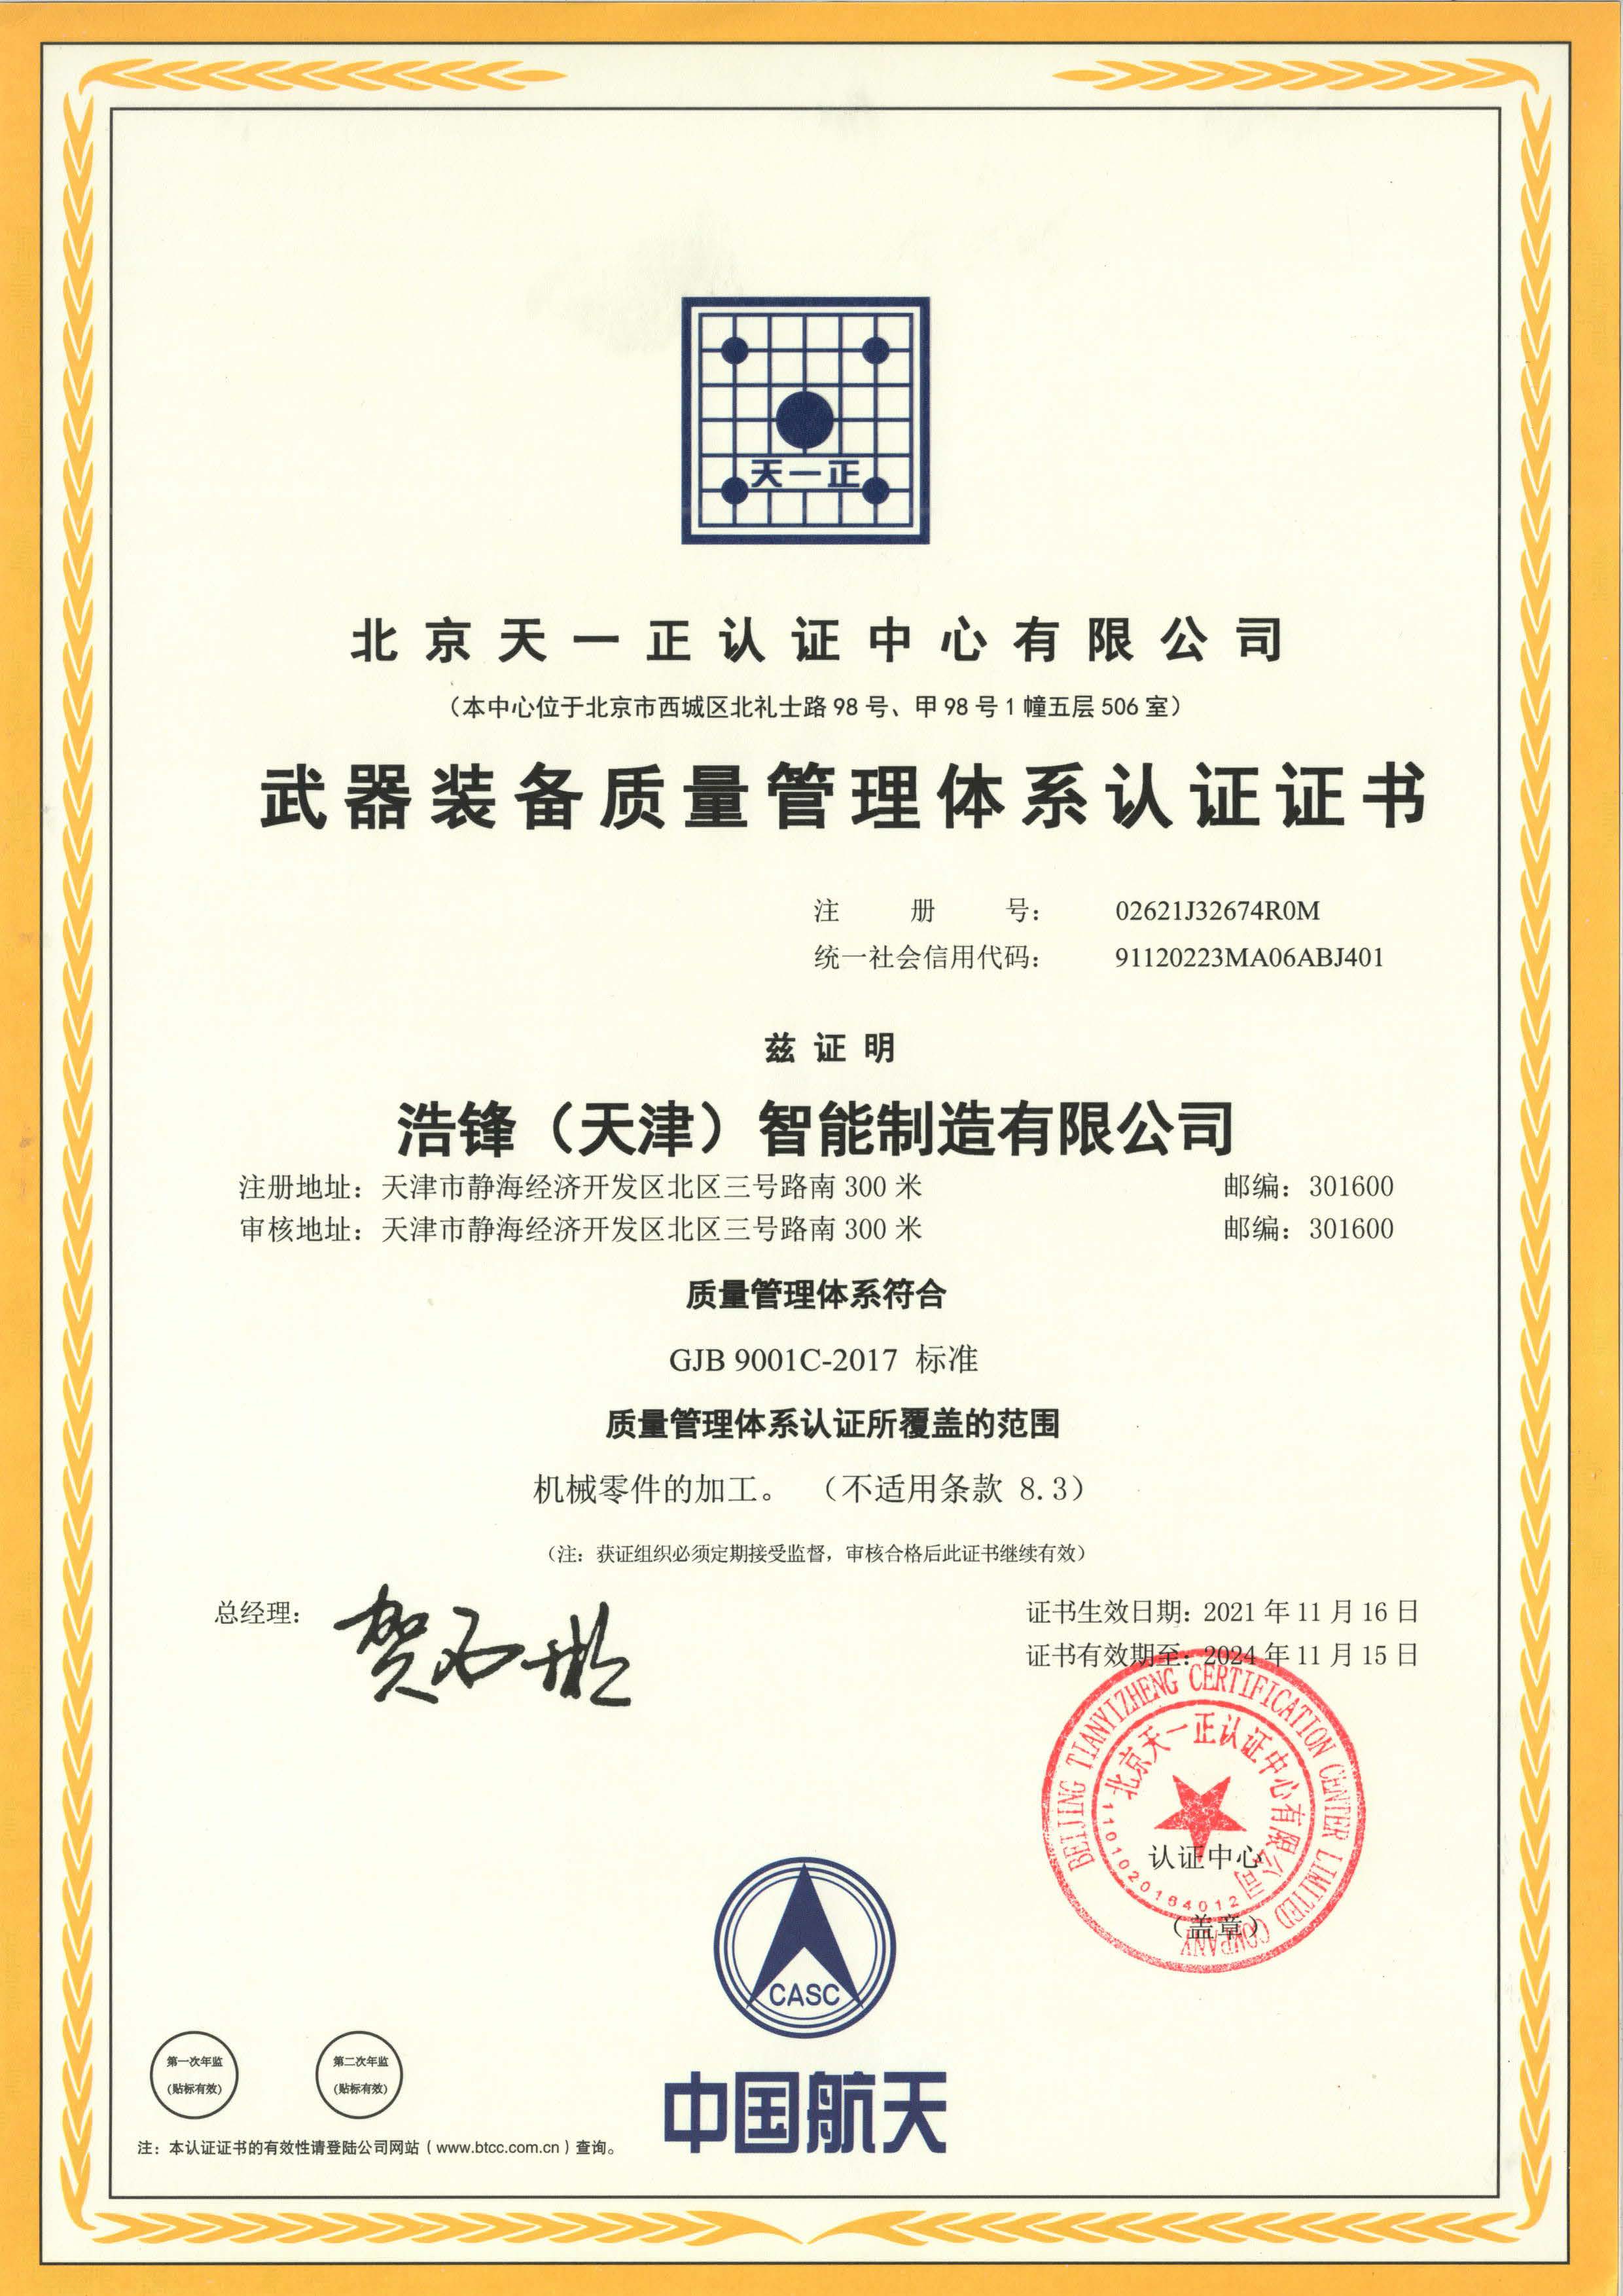 UKAS 雄偉ISO9001管理體系證書-中文